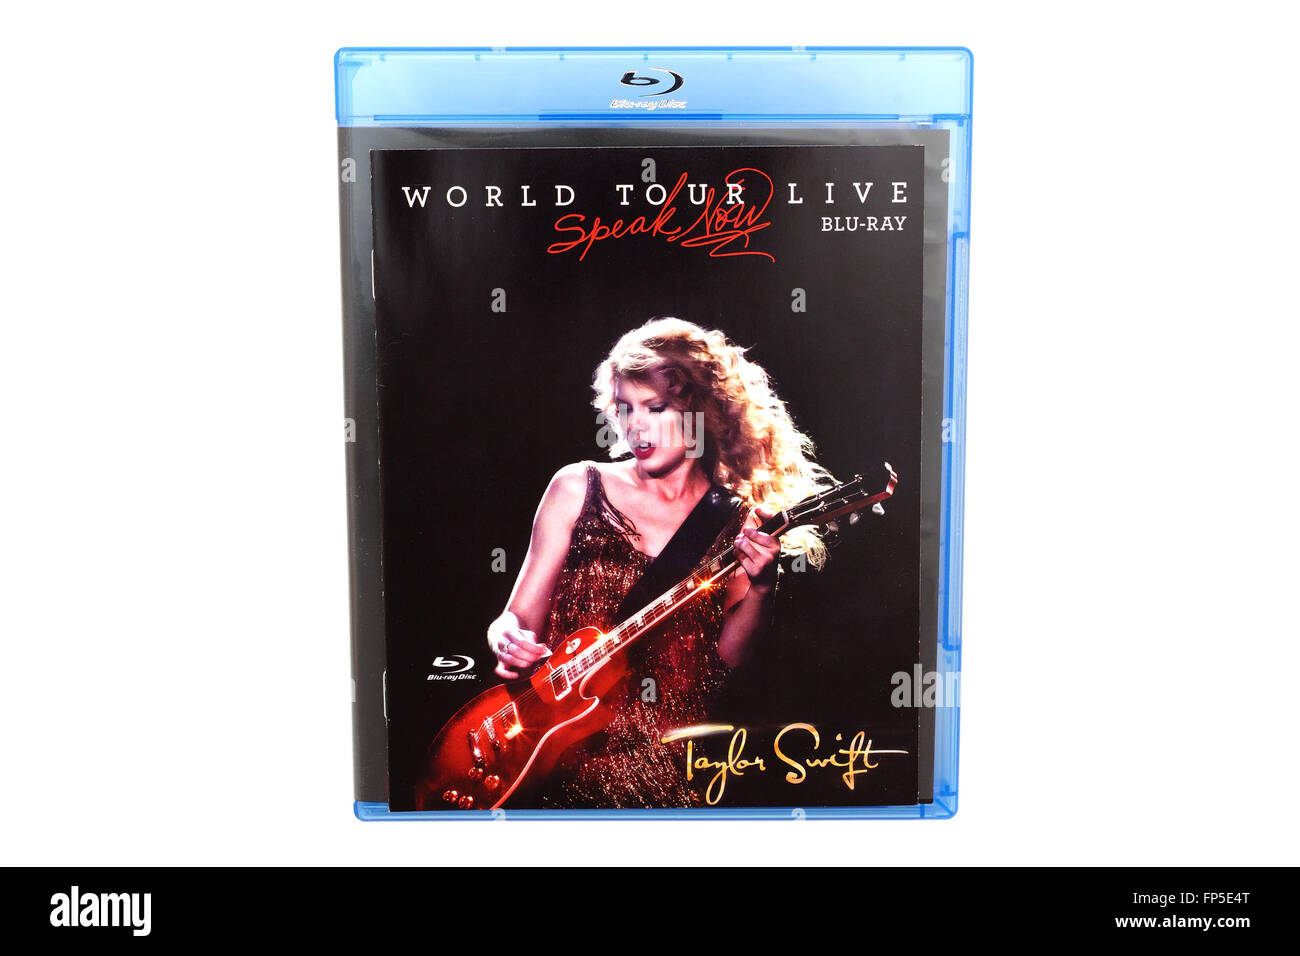 Barcellona, Spagna - 27 DIC 2014: il parlare adesso di World Tour Live, il primo album dal vivo da American cantautrice Taylor Swift. Foto Stock